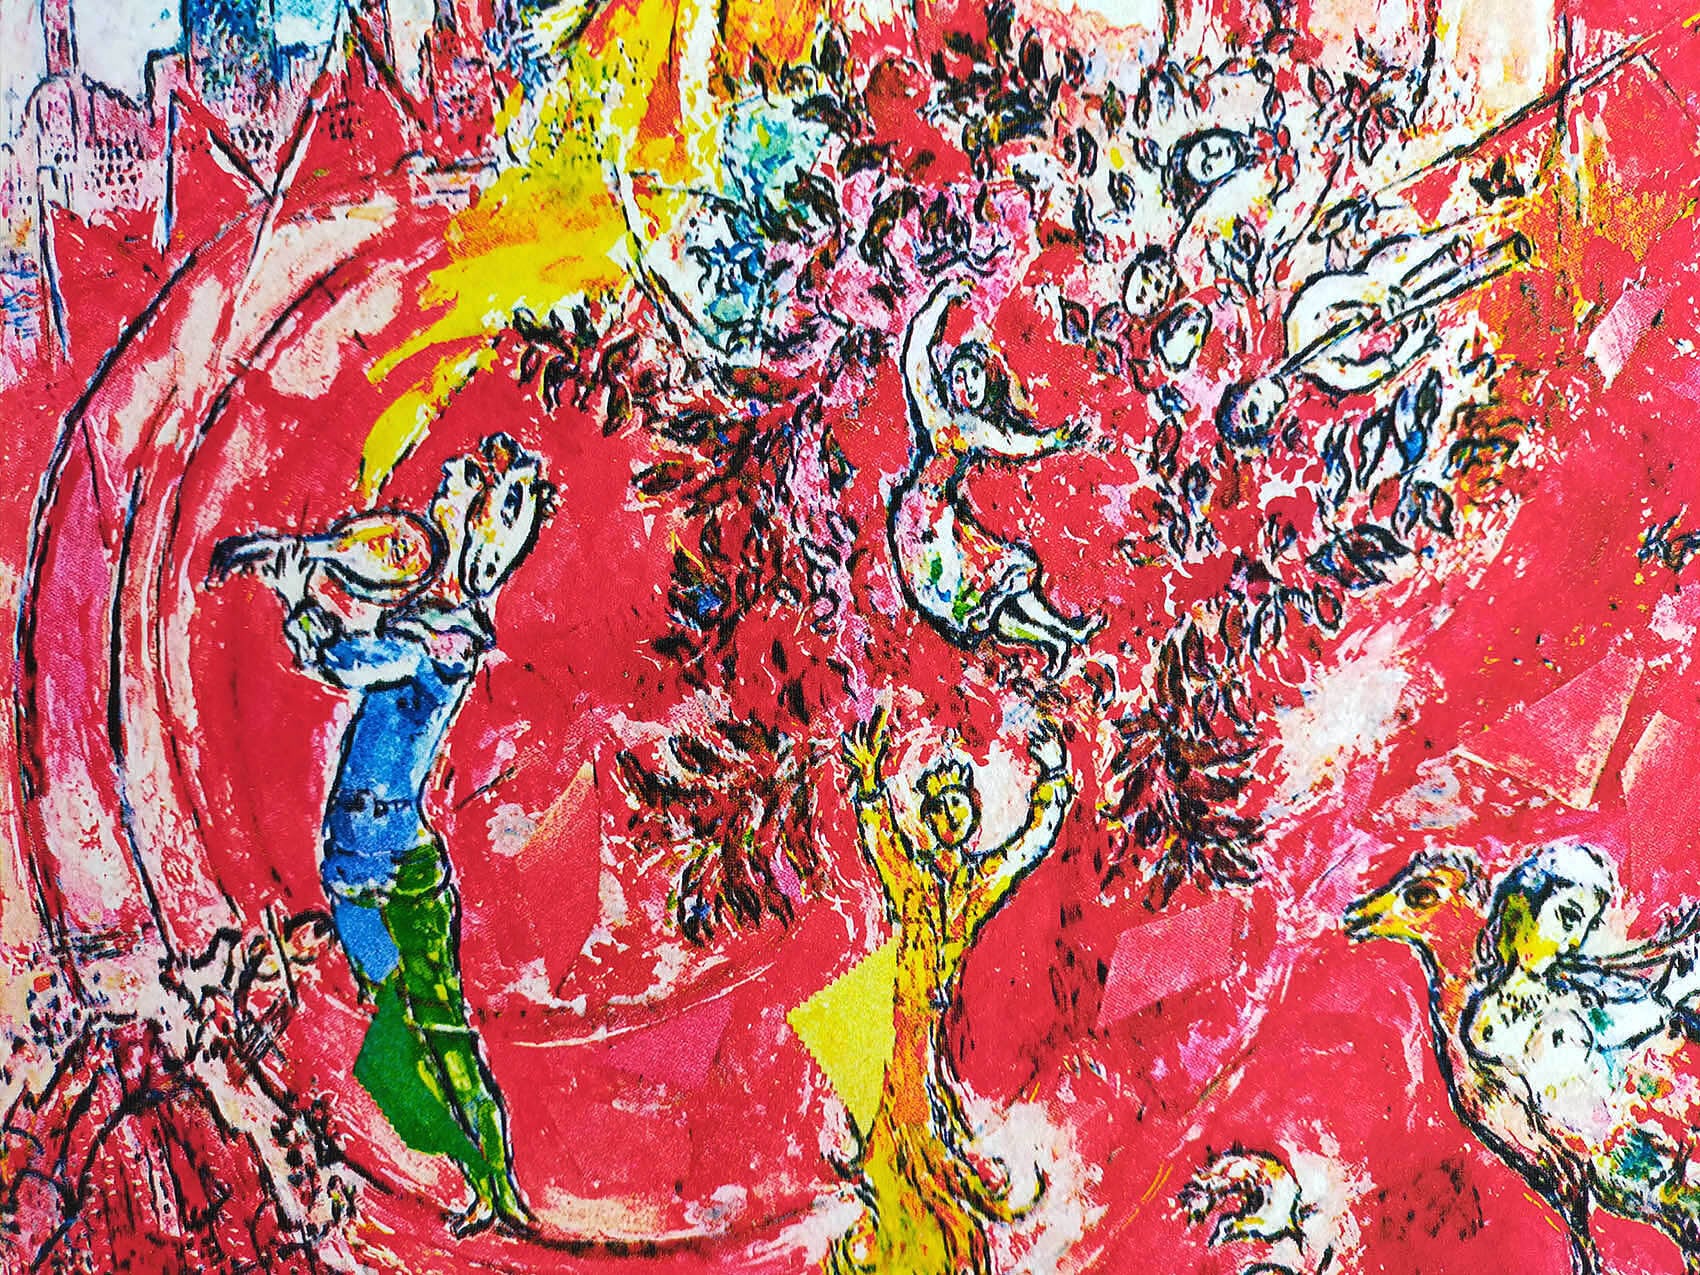 マルク・シャガール絵画「音楽の勝利」作品証明書・展示用フック・限定375部エディション付複製画ジークレ